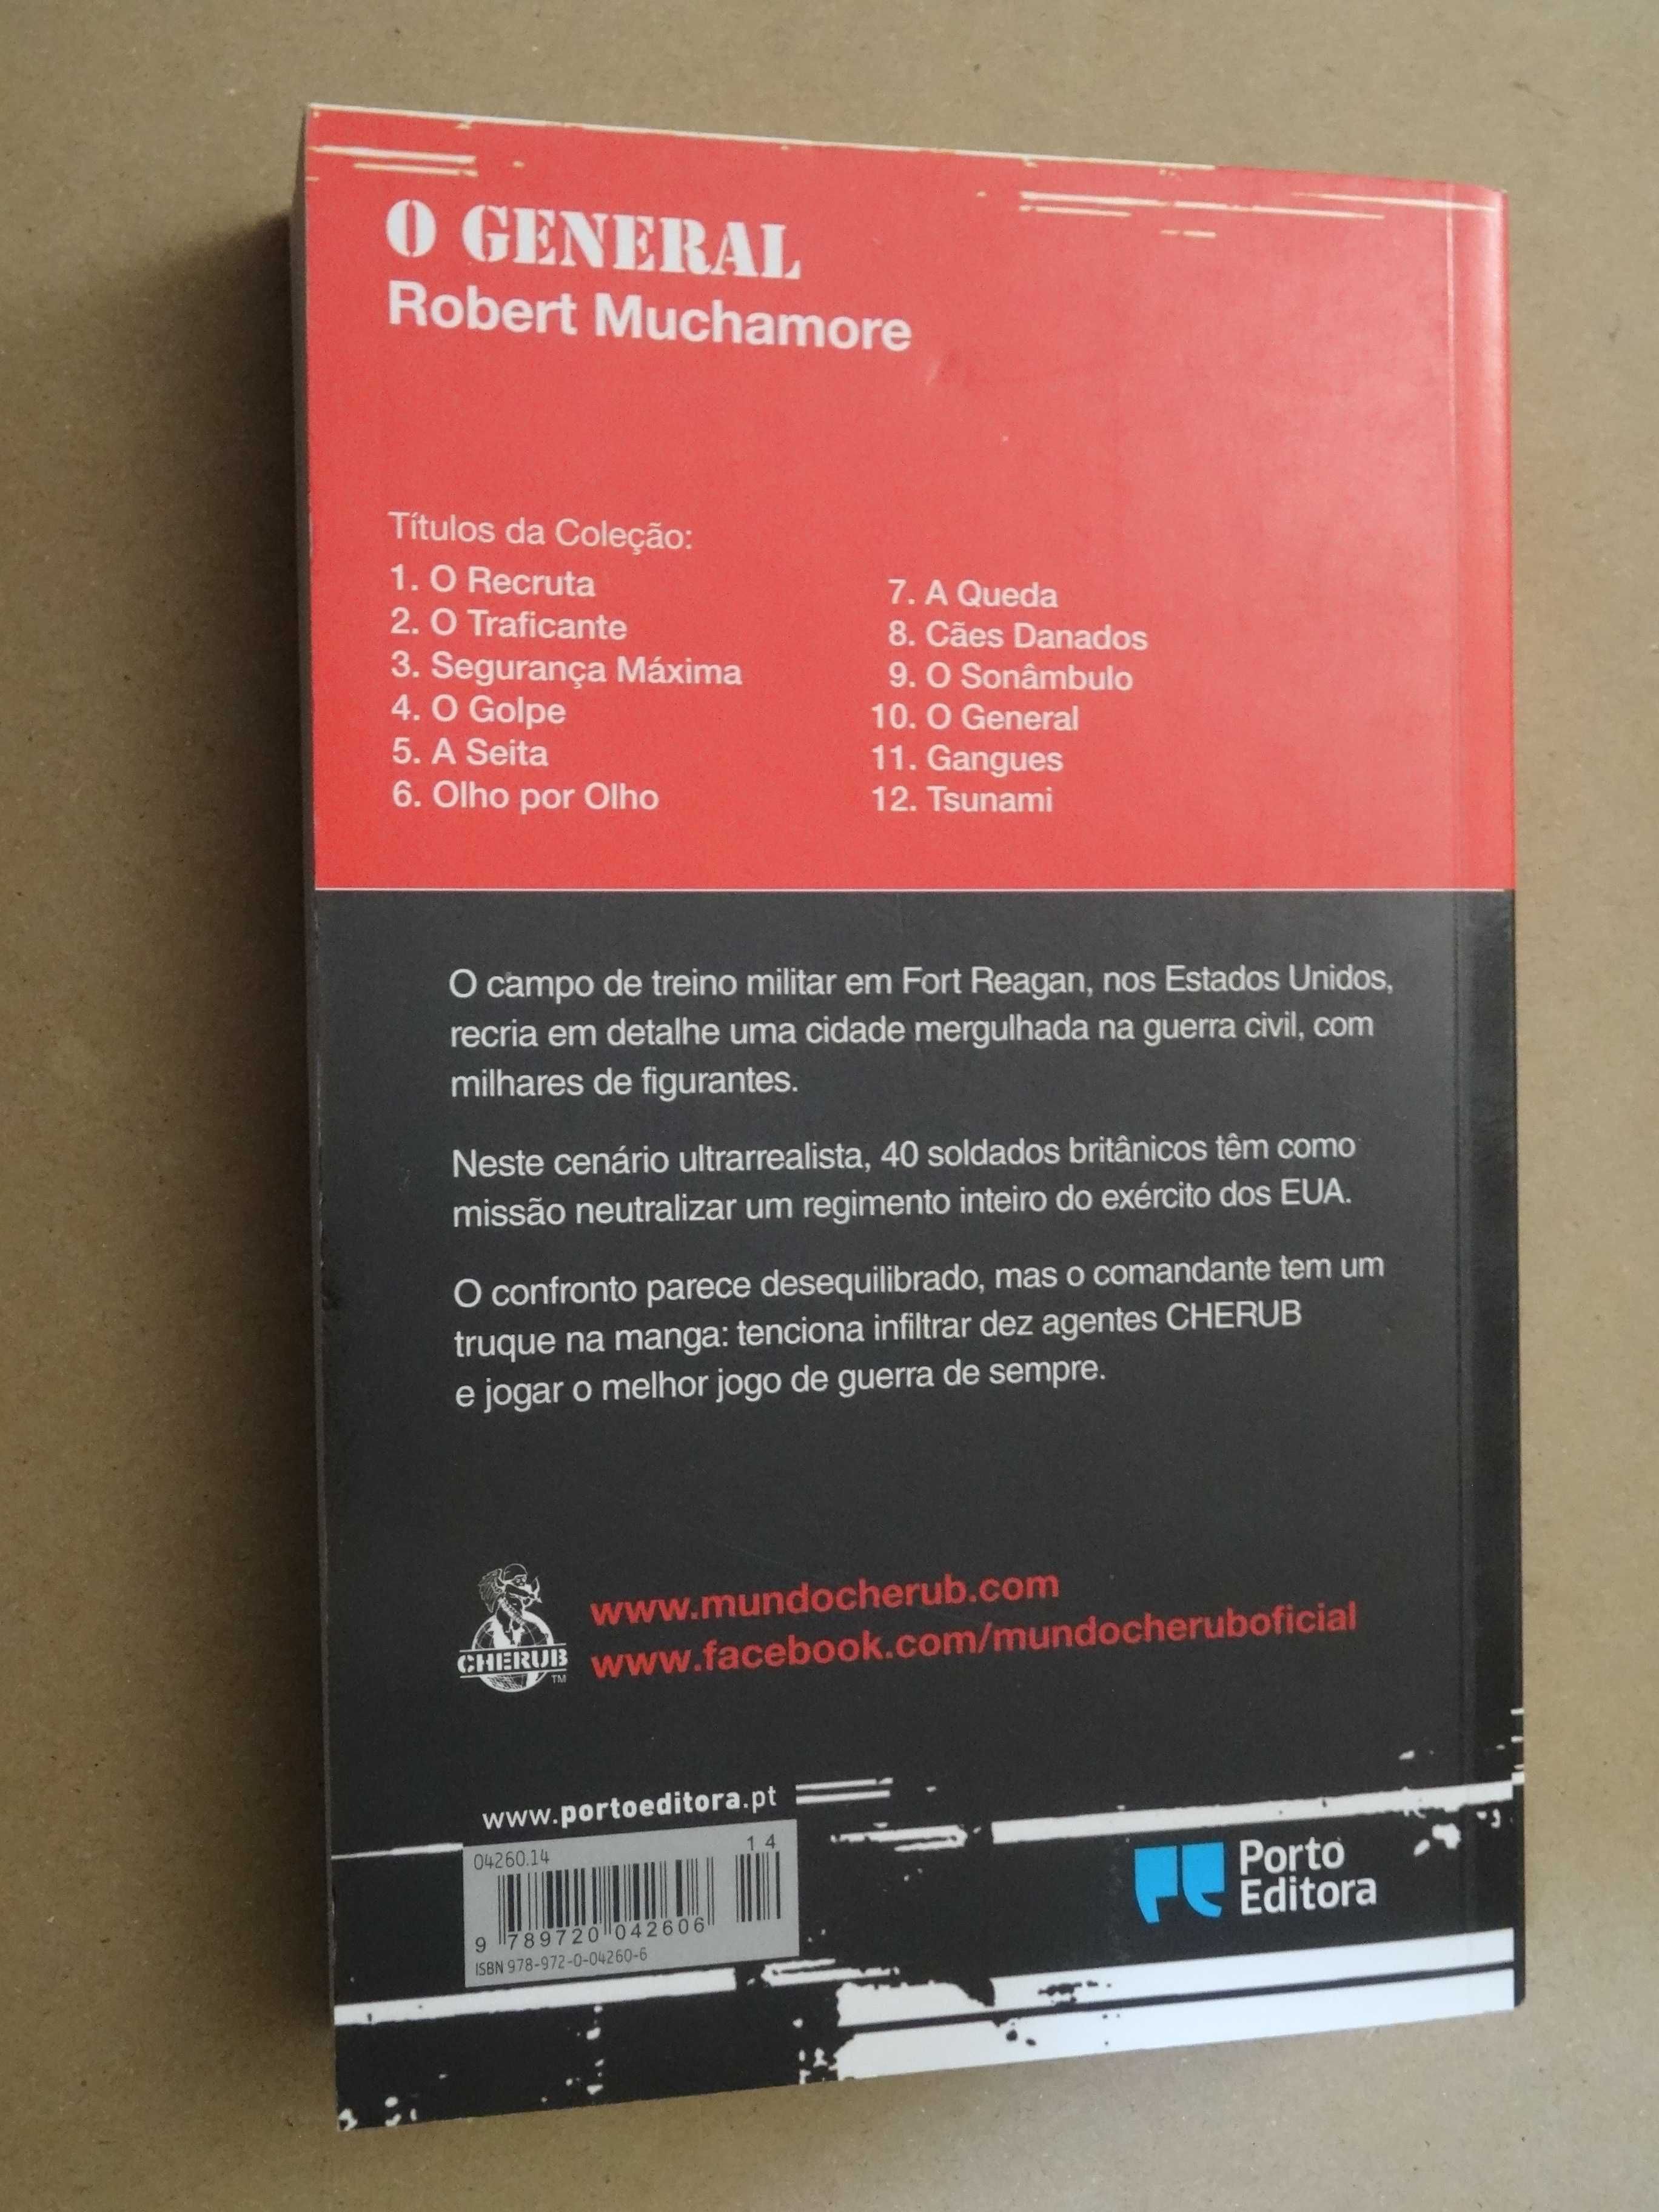 O General de Robert Muchamore - 1ª Edição